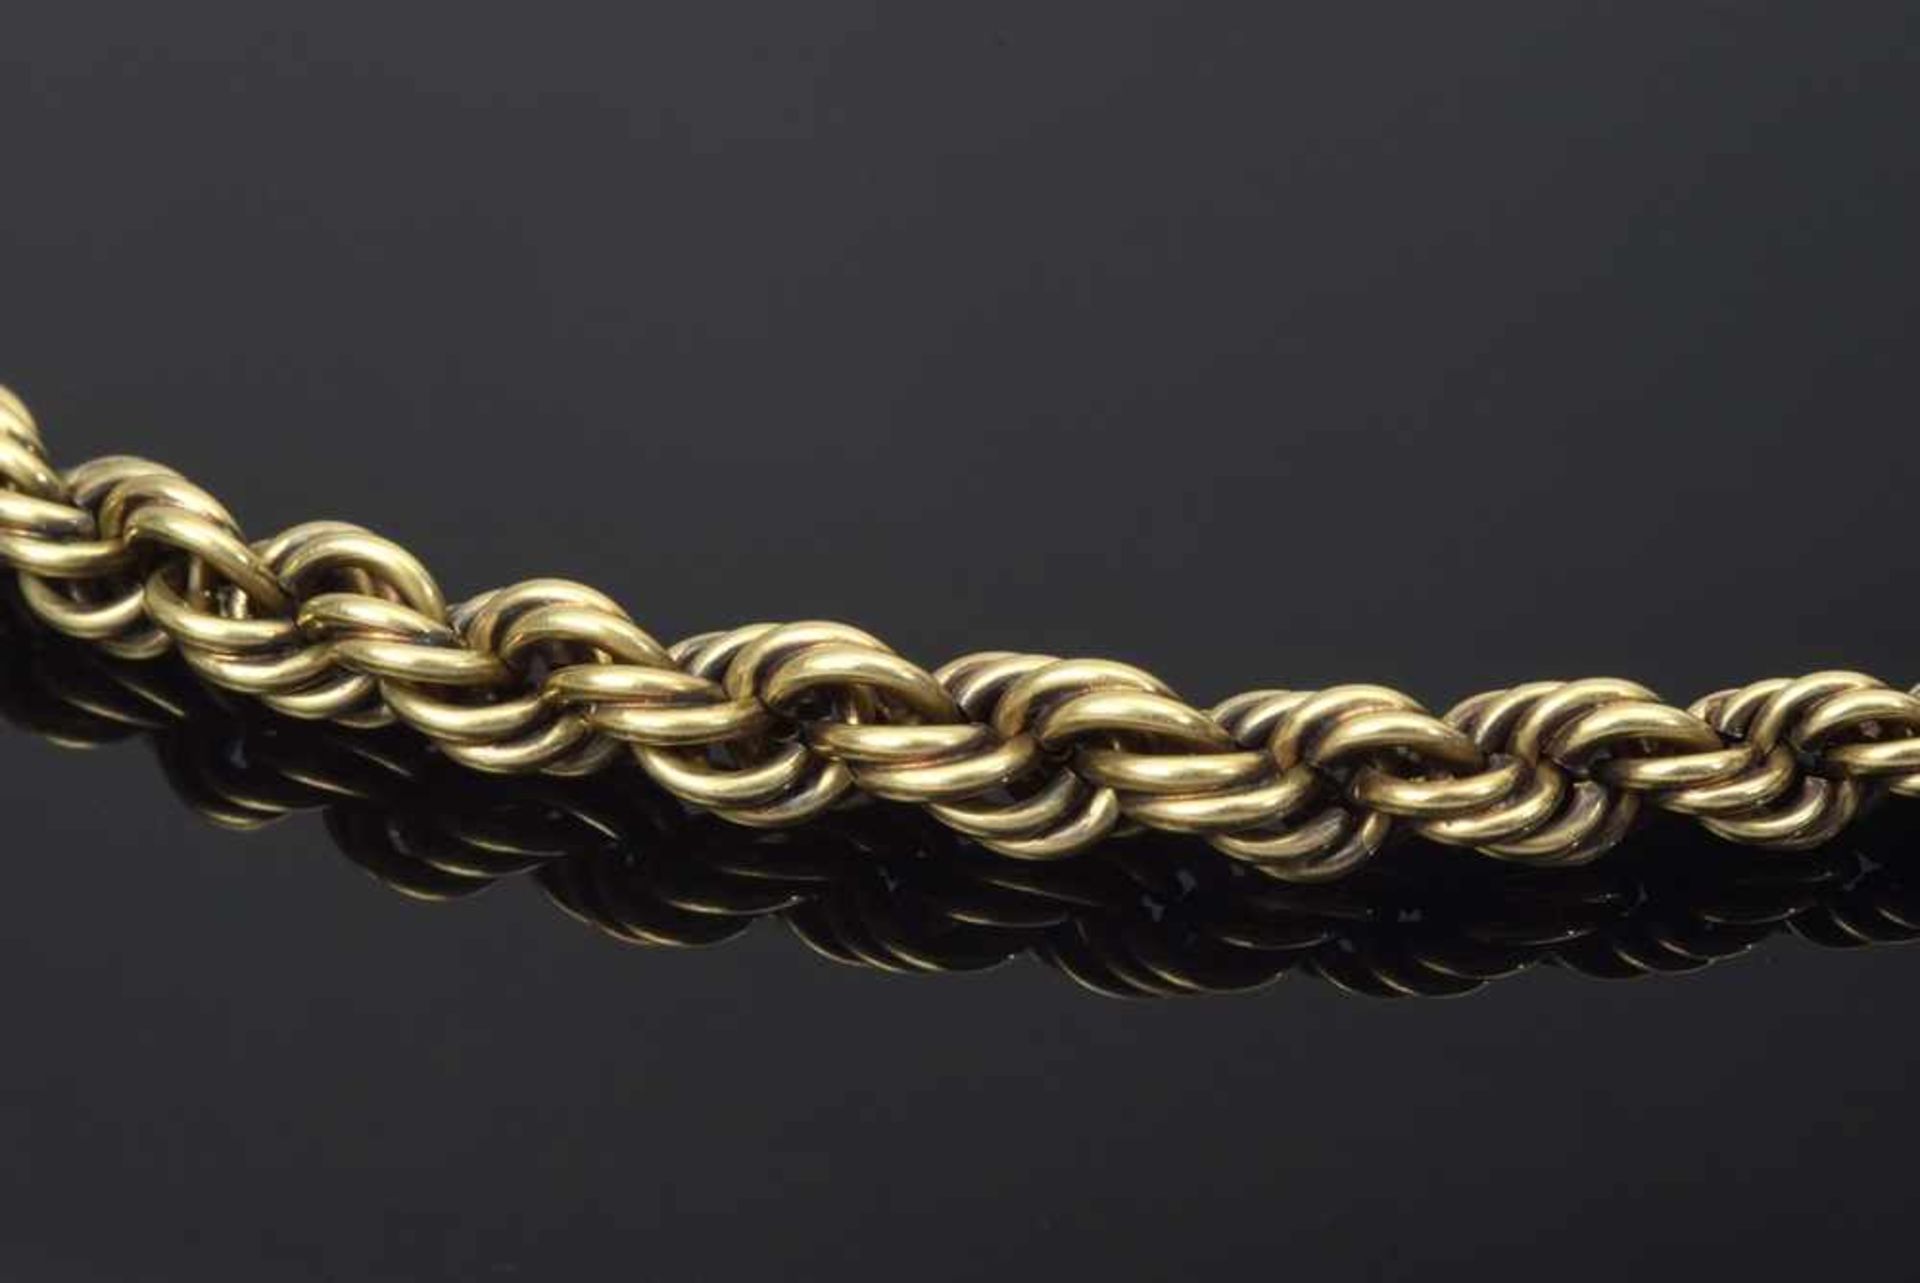 GG 585 Kordelkette, 10,3g, L. 48cm YG 585 Cord necklace, 10,3g, L. 48cm - Image 2 of 2